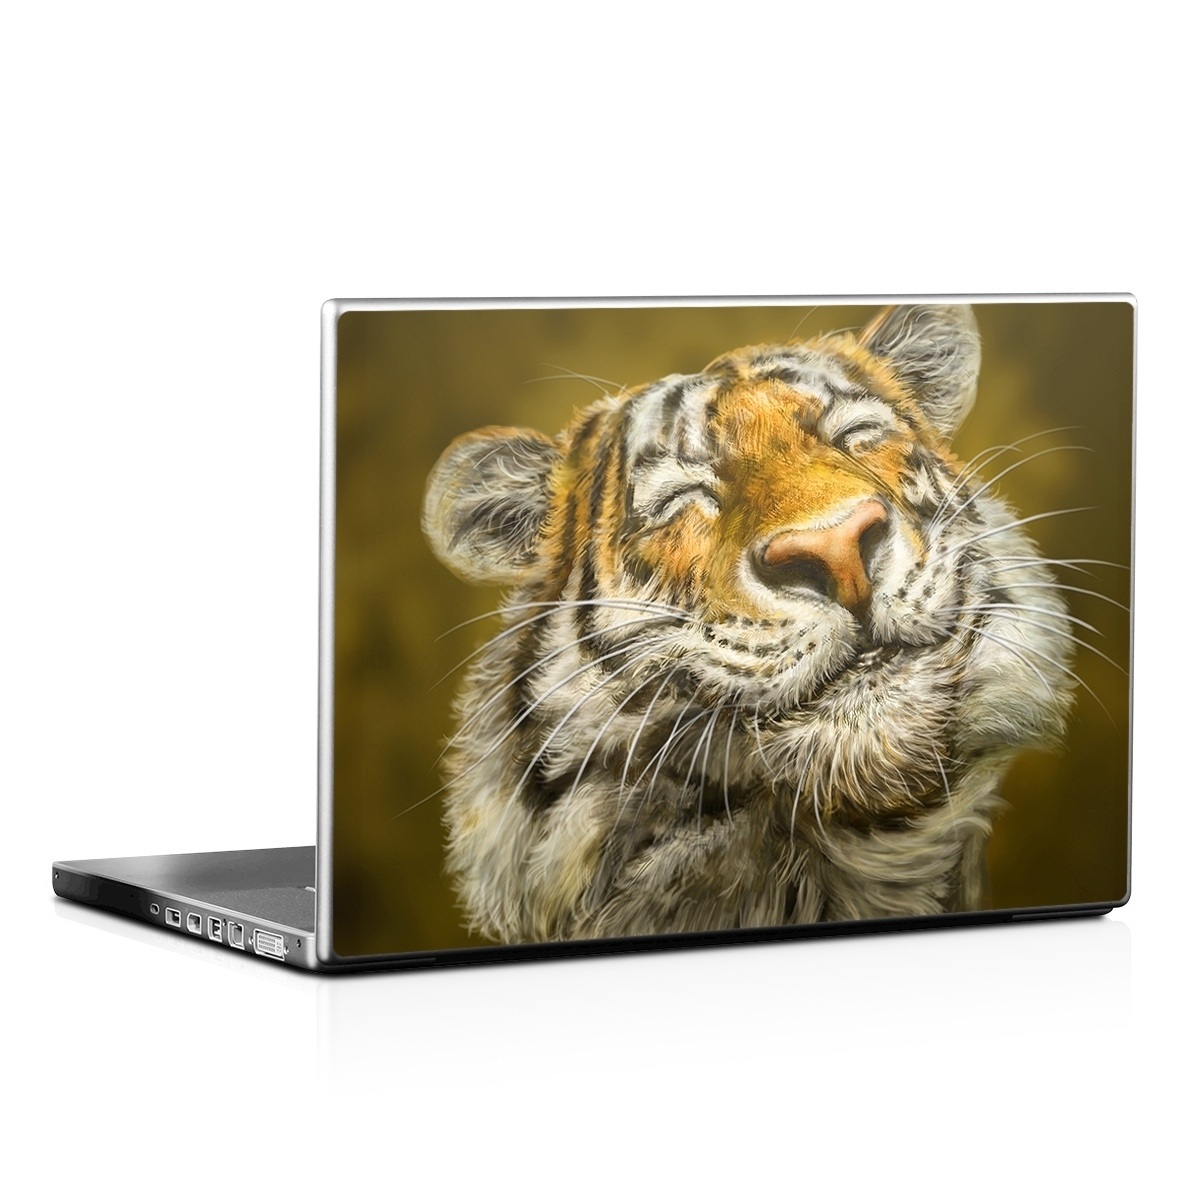 Laptop Skin - Smiling Tiger (Image 1)